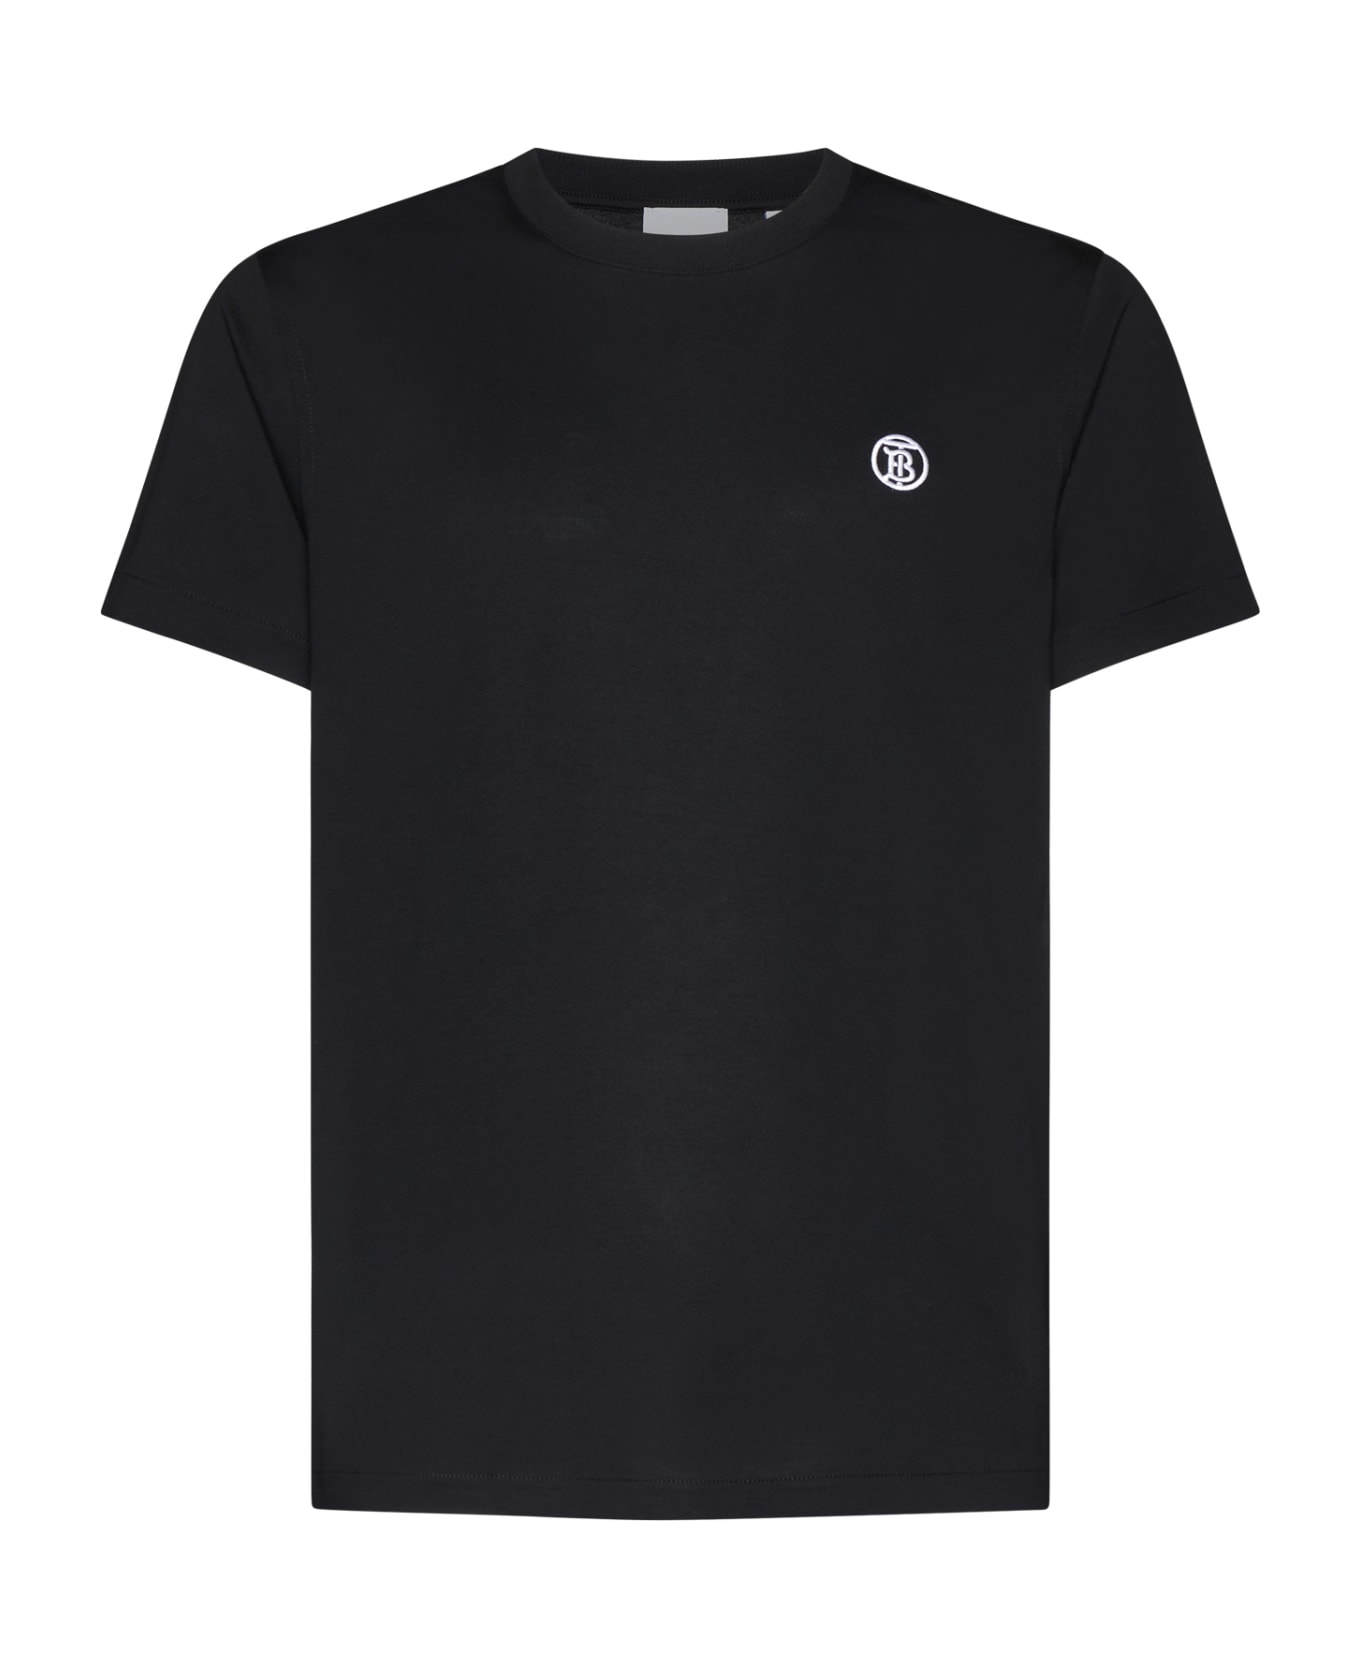 Burberry T-Shirt - Black